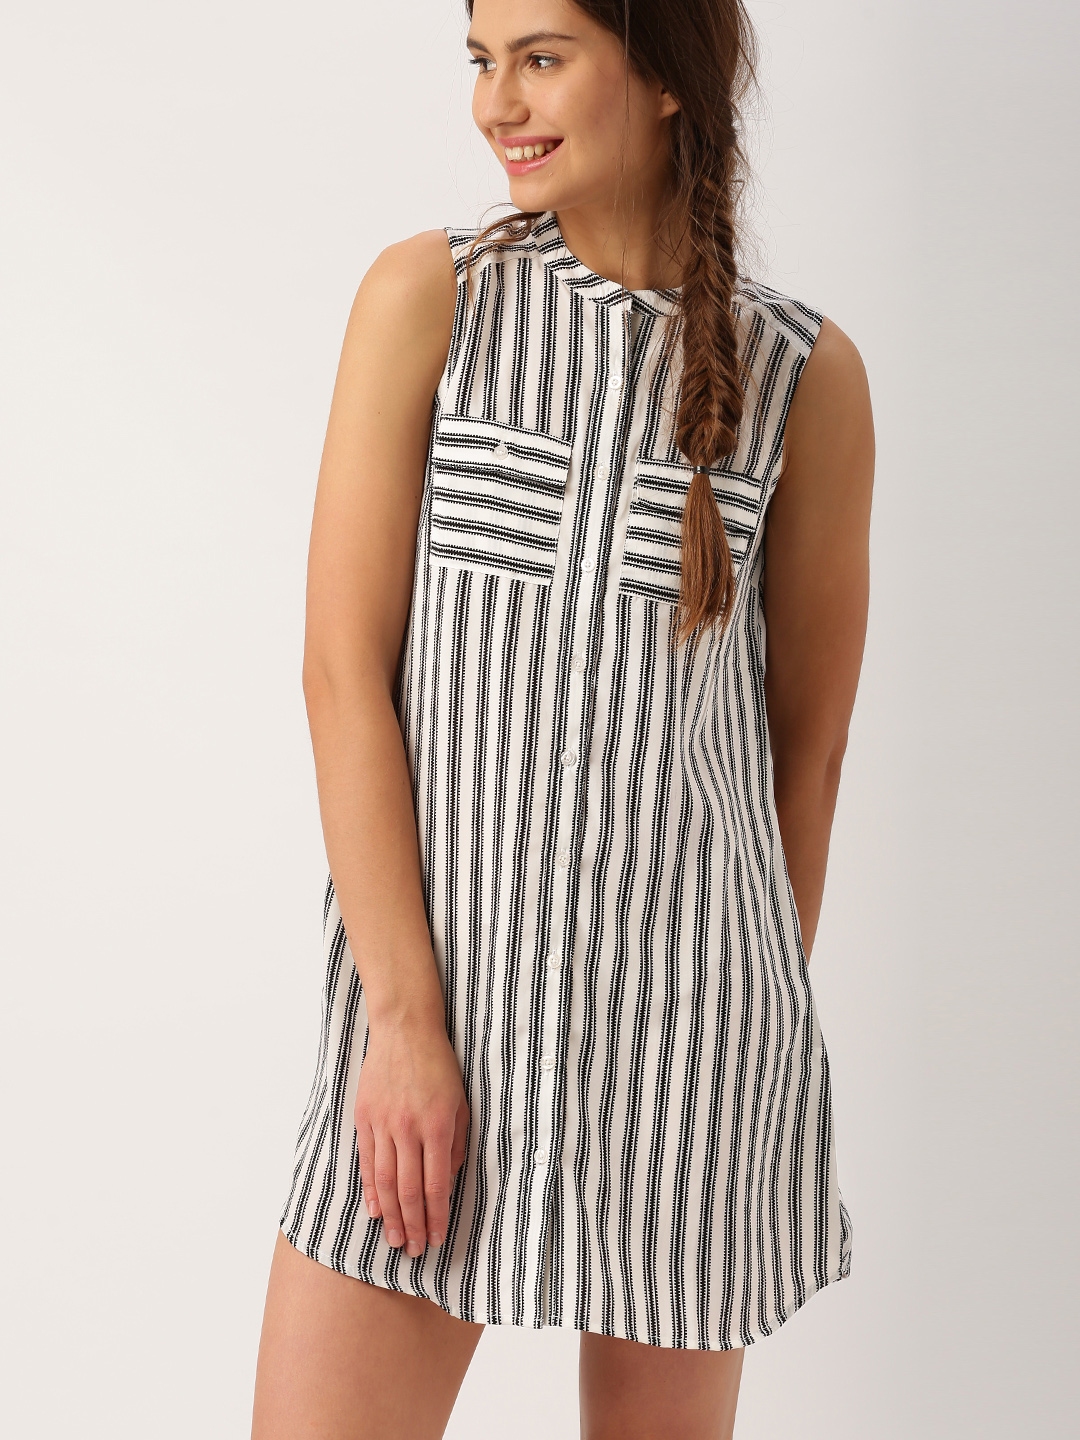 Buy DressBerry Women Black & White Striped Shirt Dress - Dresses for